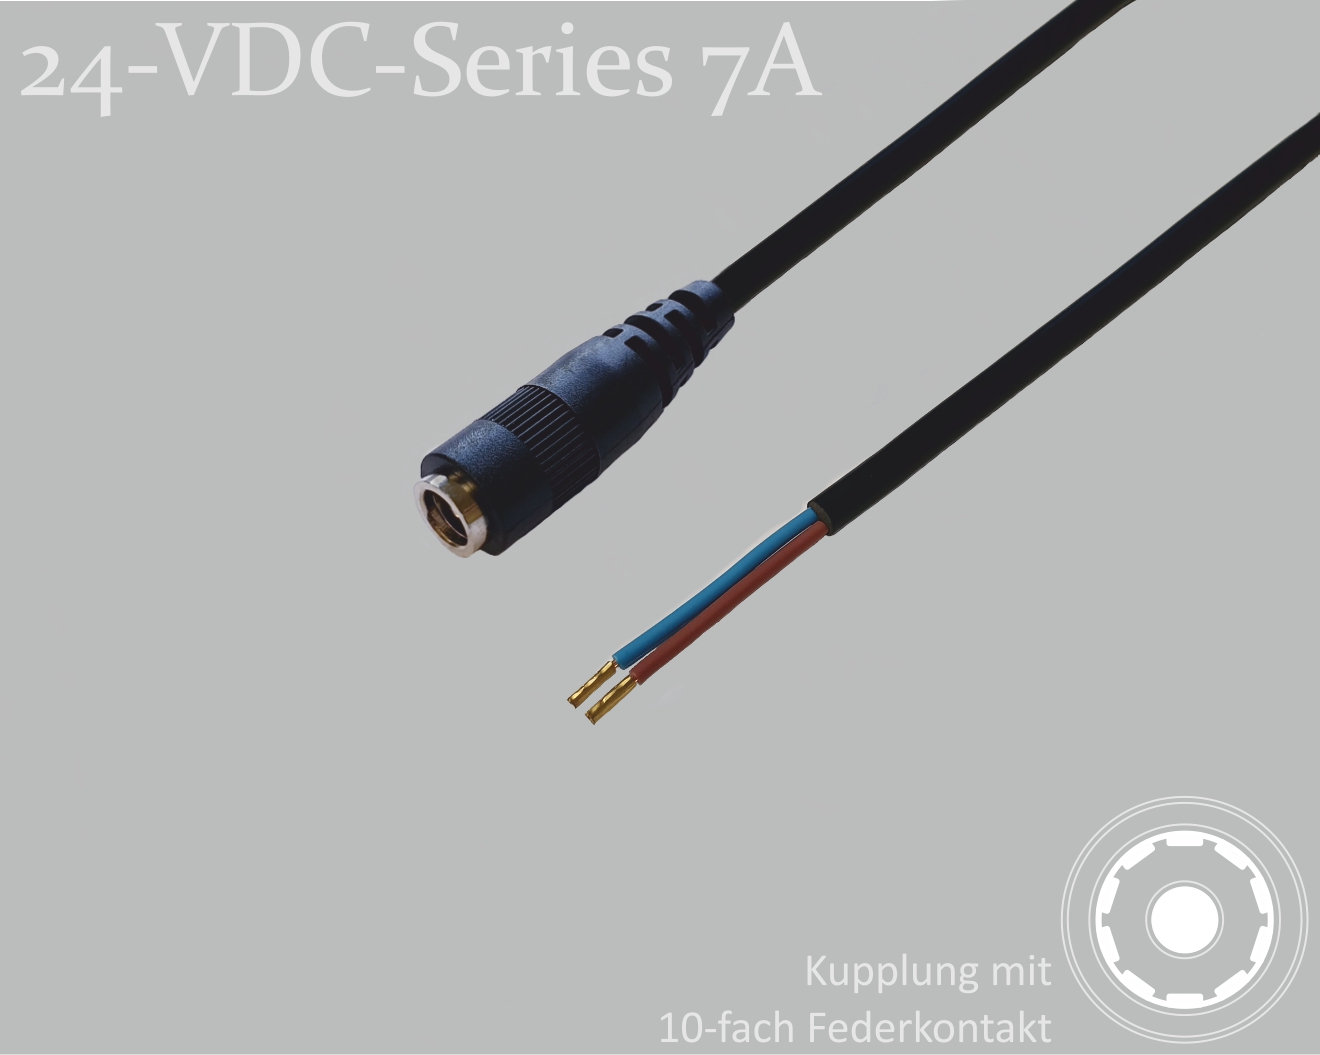 24-VDC-Series 7A, DC-Anschlusskabel, DC-Kupplung mit 10-Federkontakt 2,1x5,5mm, Rundkabel 2x0,50mm², schwarz, Aderendhülsen, 0,75m